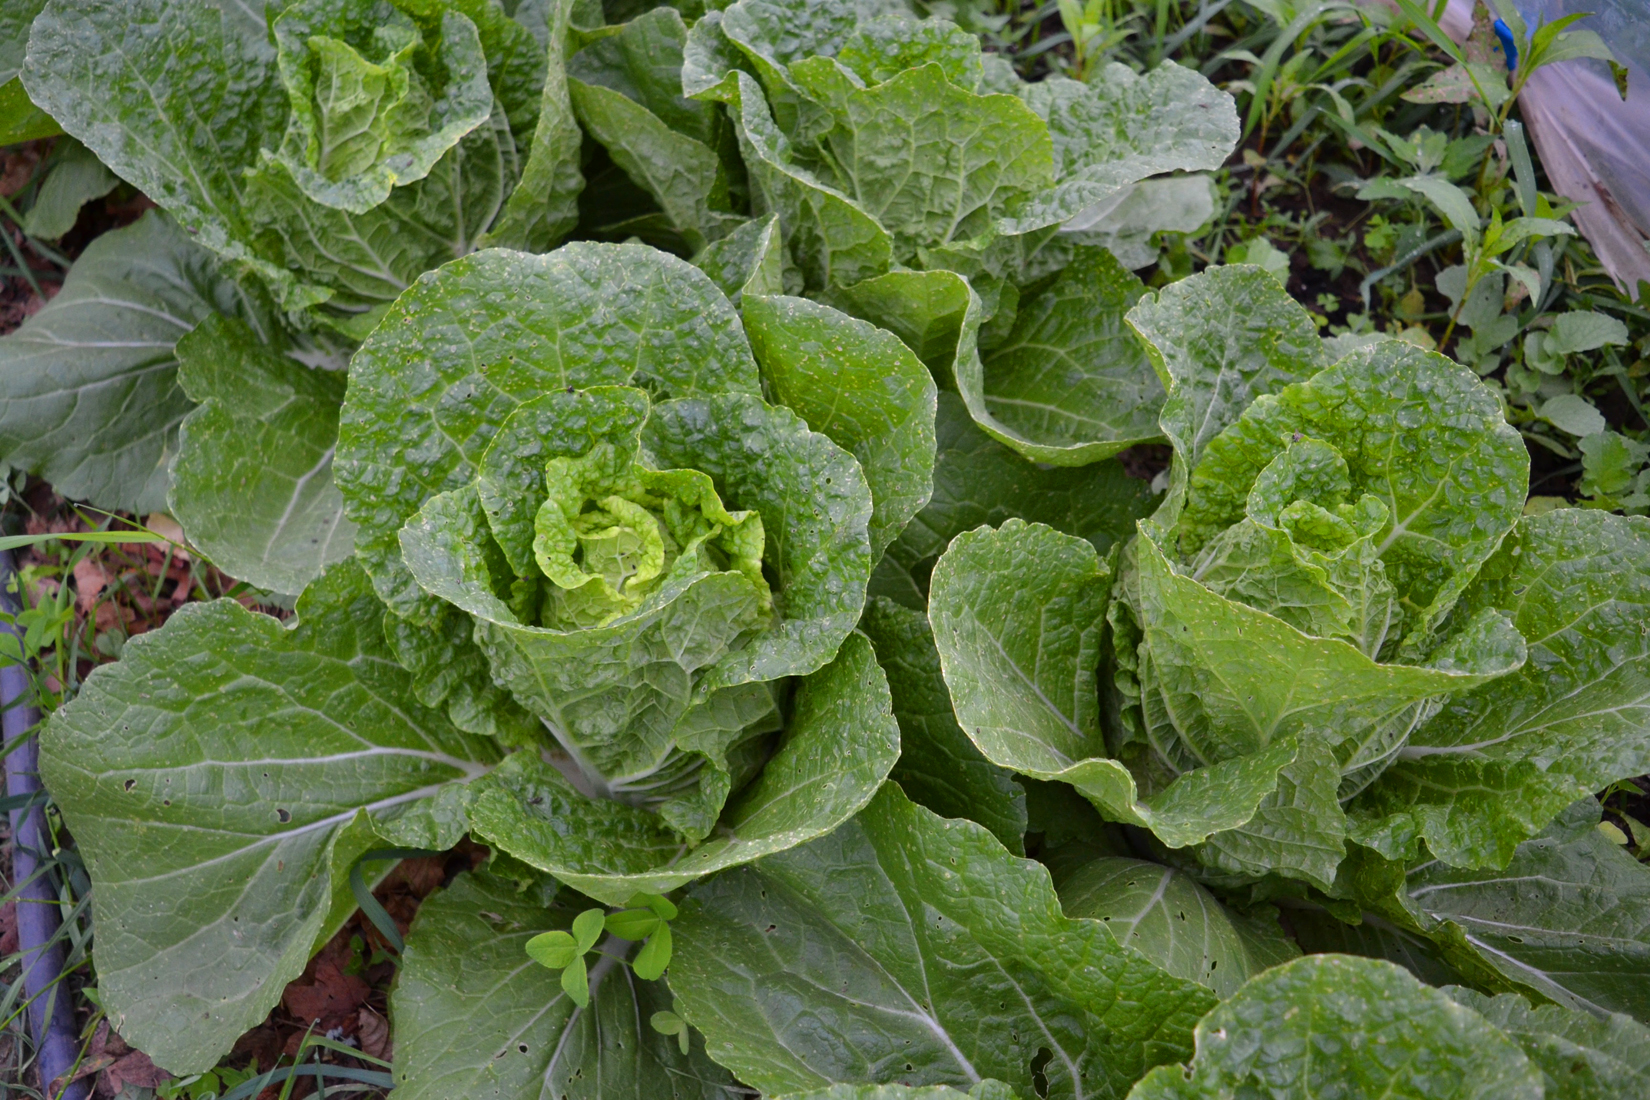 napa cabbages at We Grow LLC